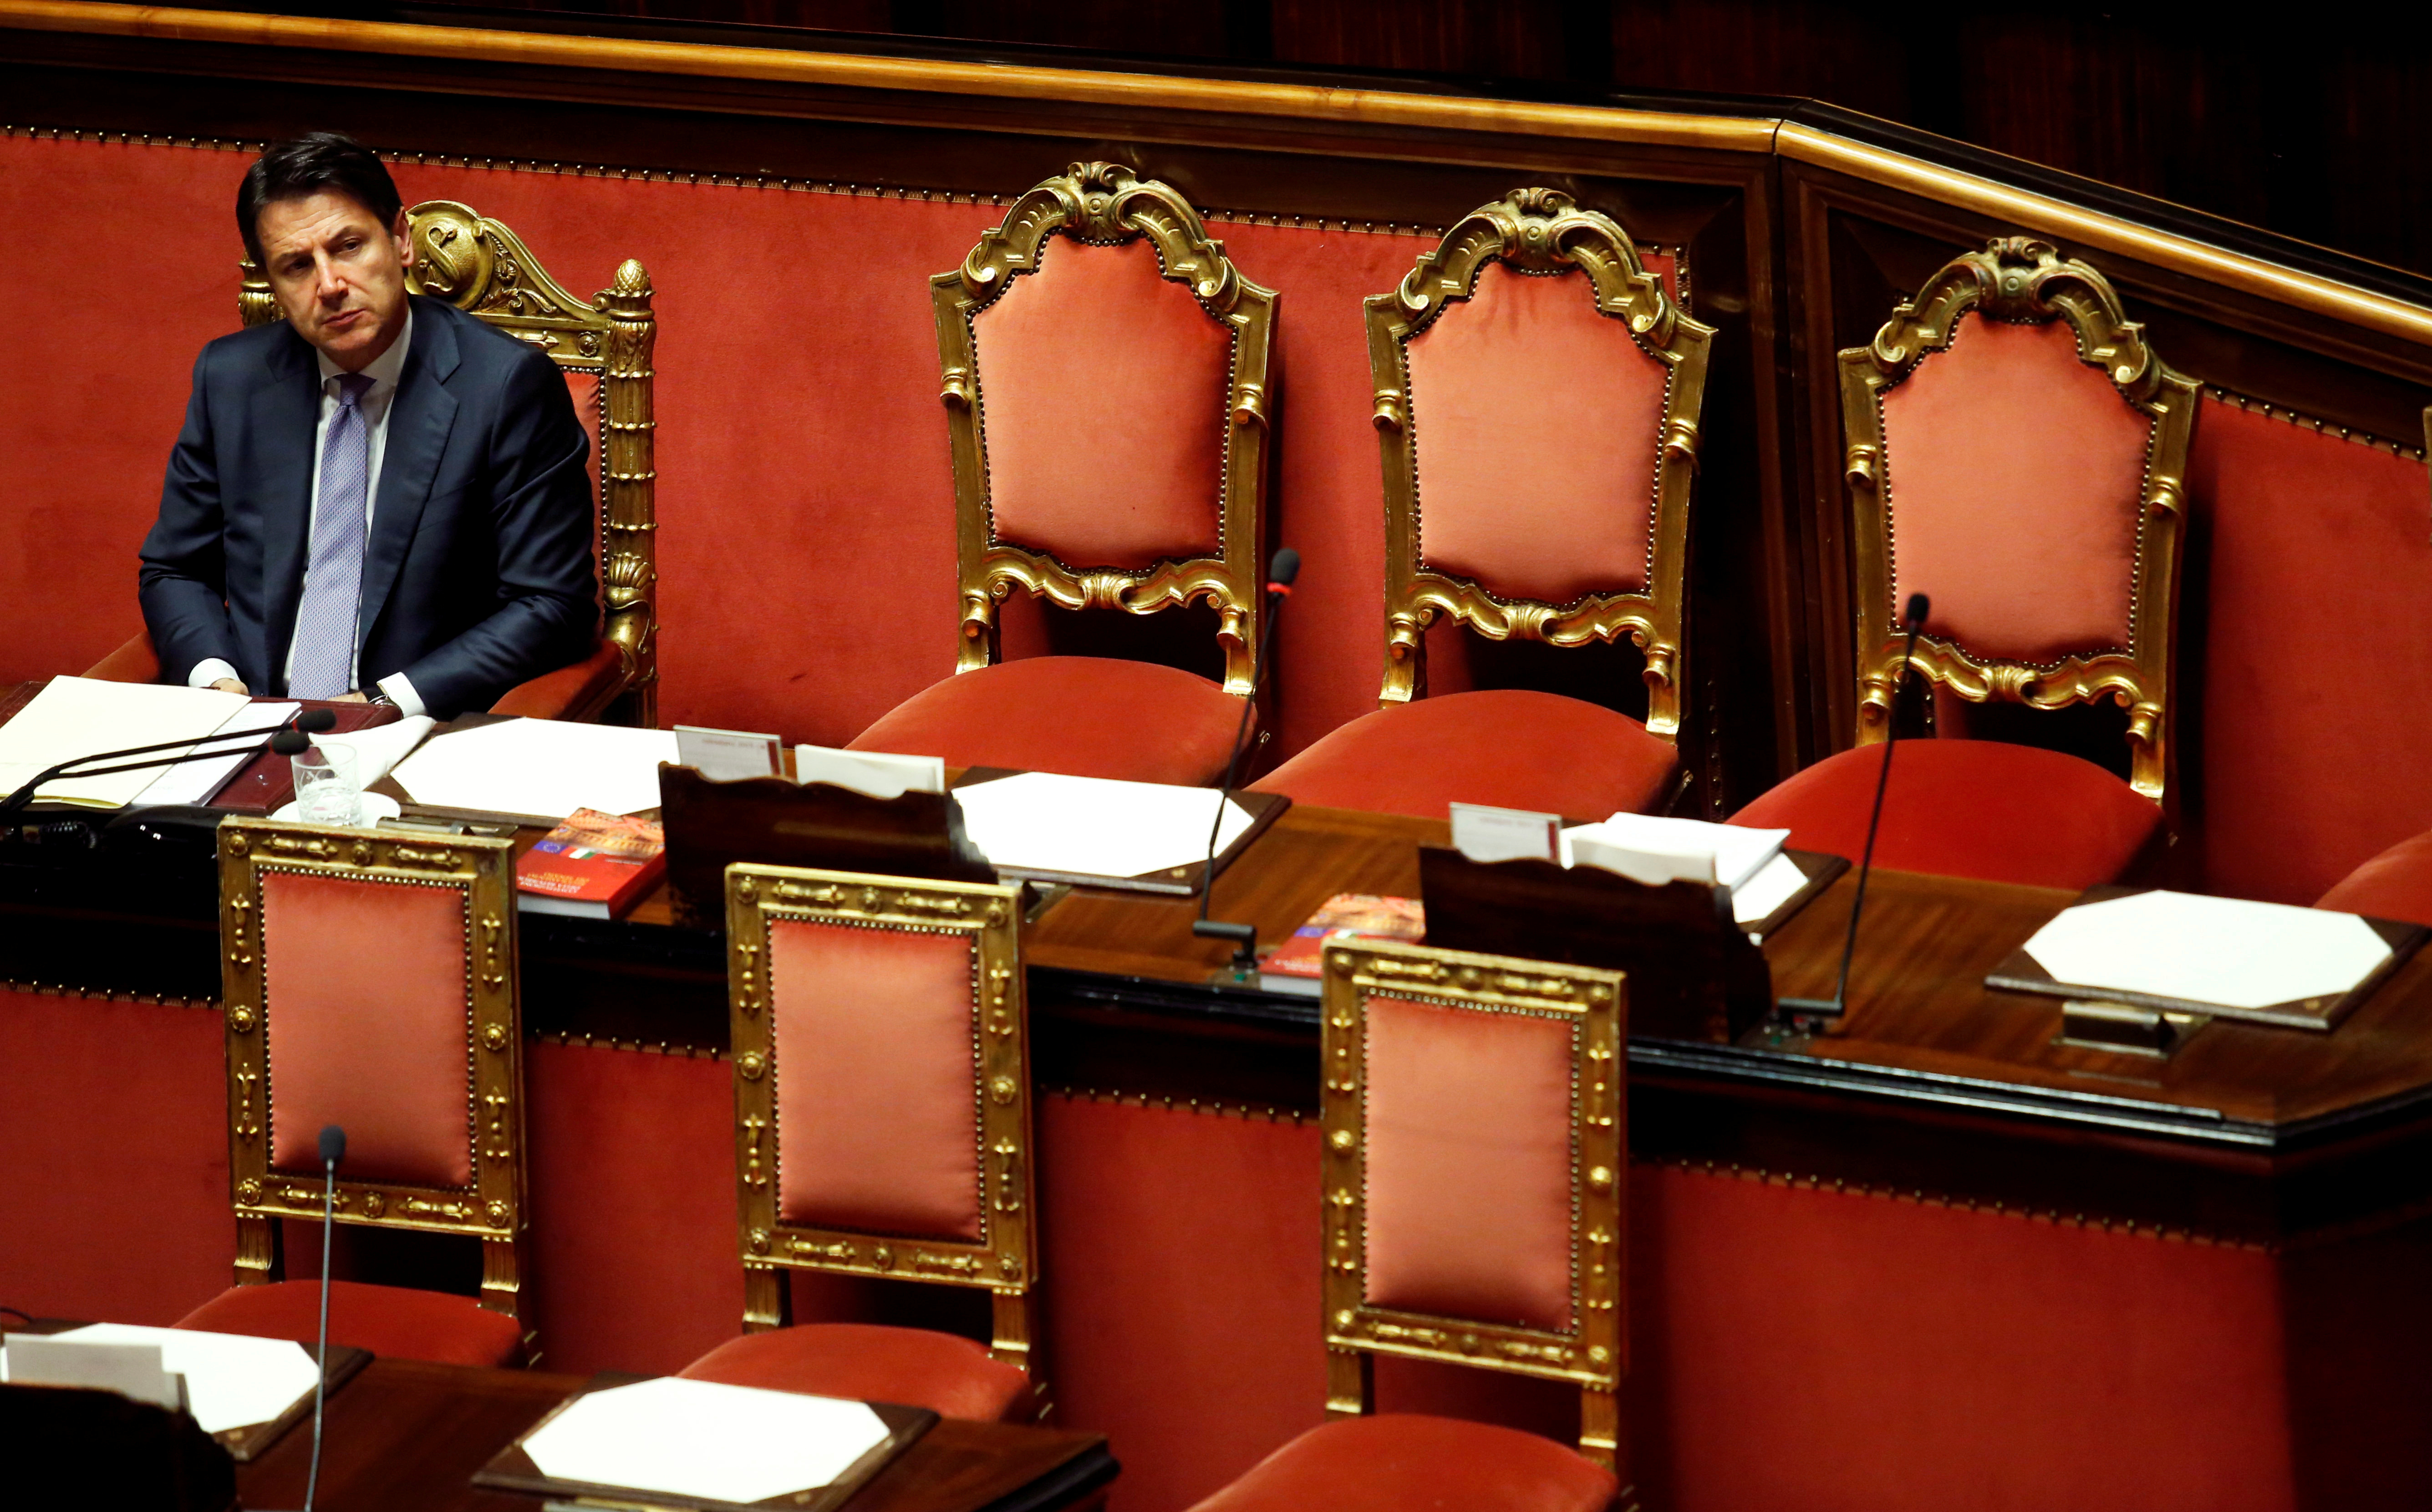 Ιταλία: Κρίσιμη εβδομάδα για την τύχη της κυβέρνησης Κόντε